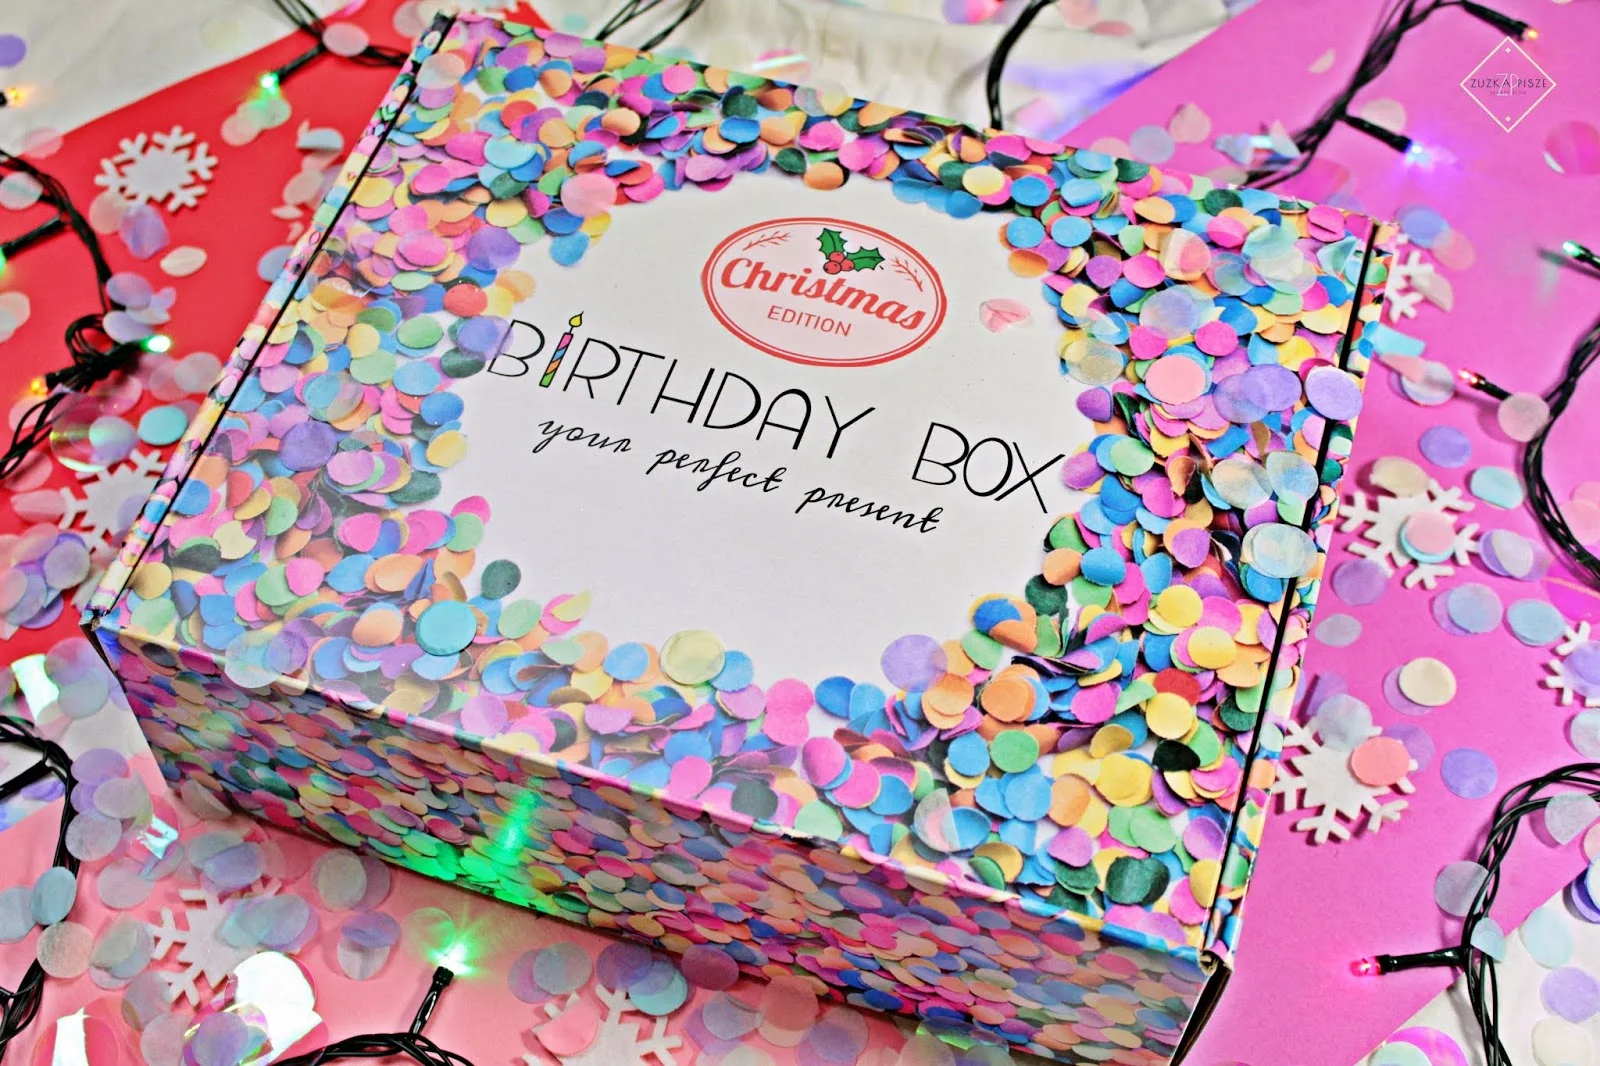 Openbox Świątecznego Box'a Christmas Edition od BirthdayBox